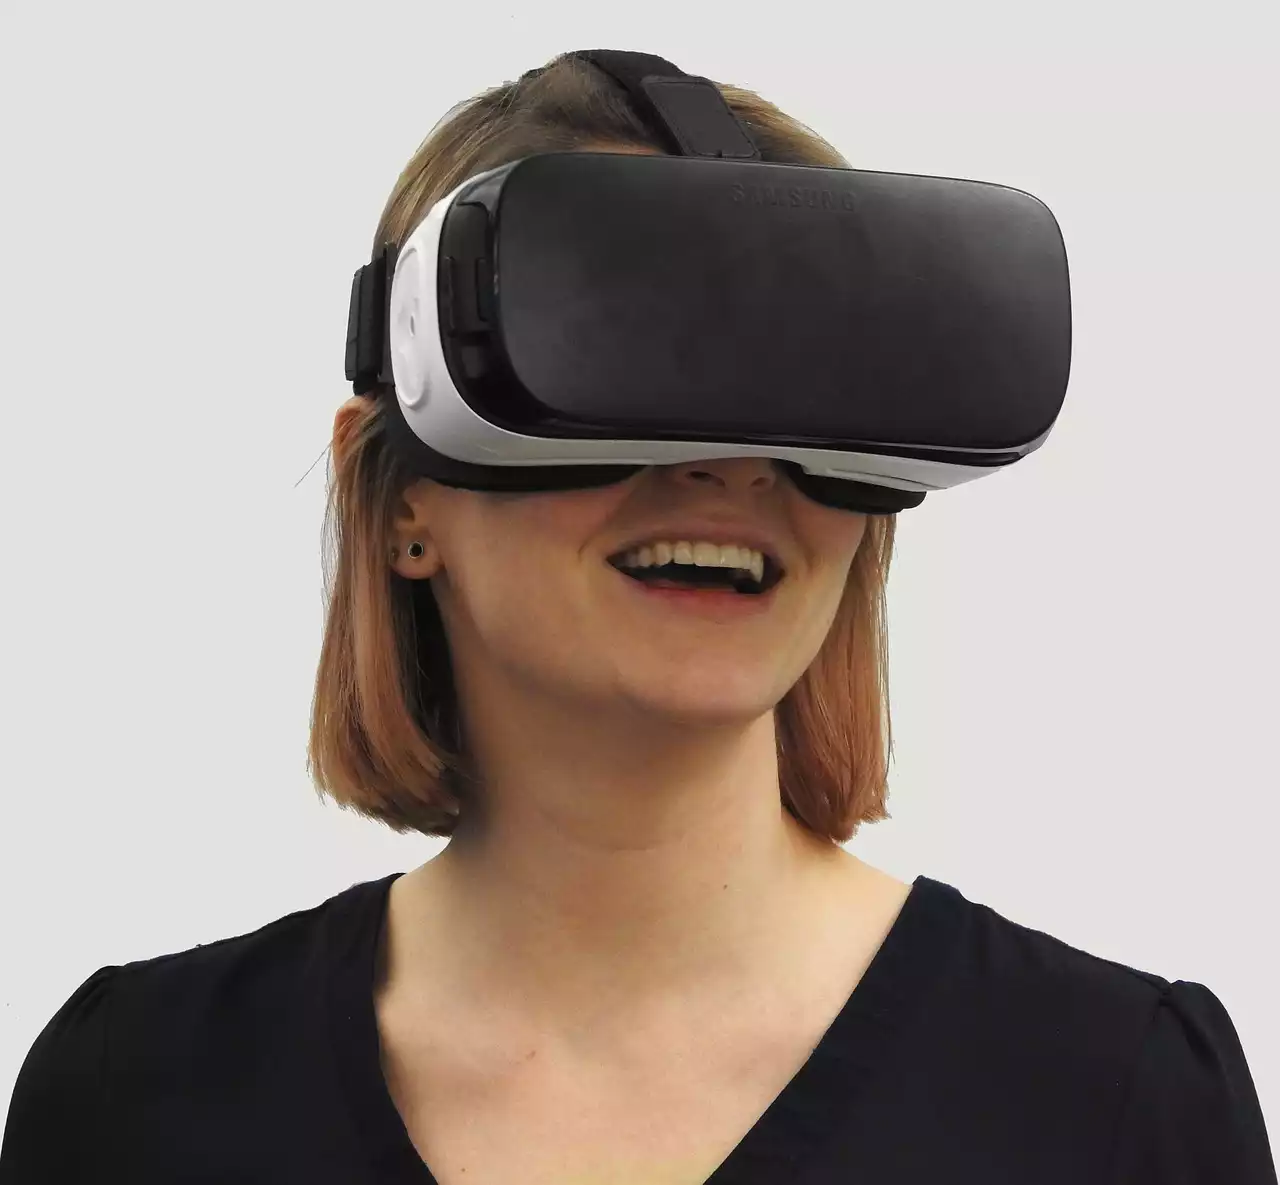 Bodysuits, mit denen Sie die virtuelle Realität spüren können